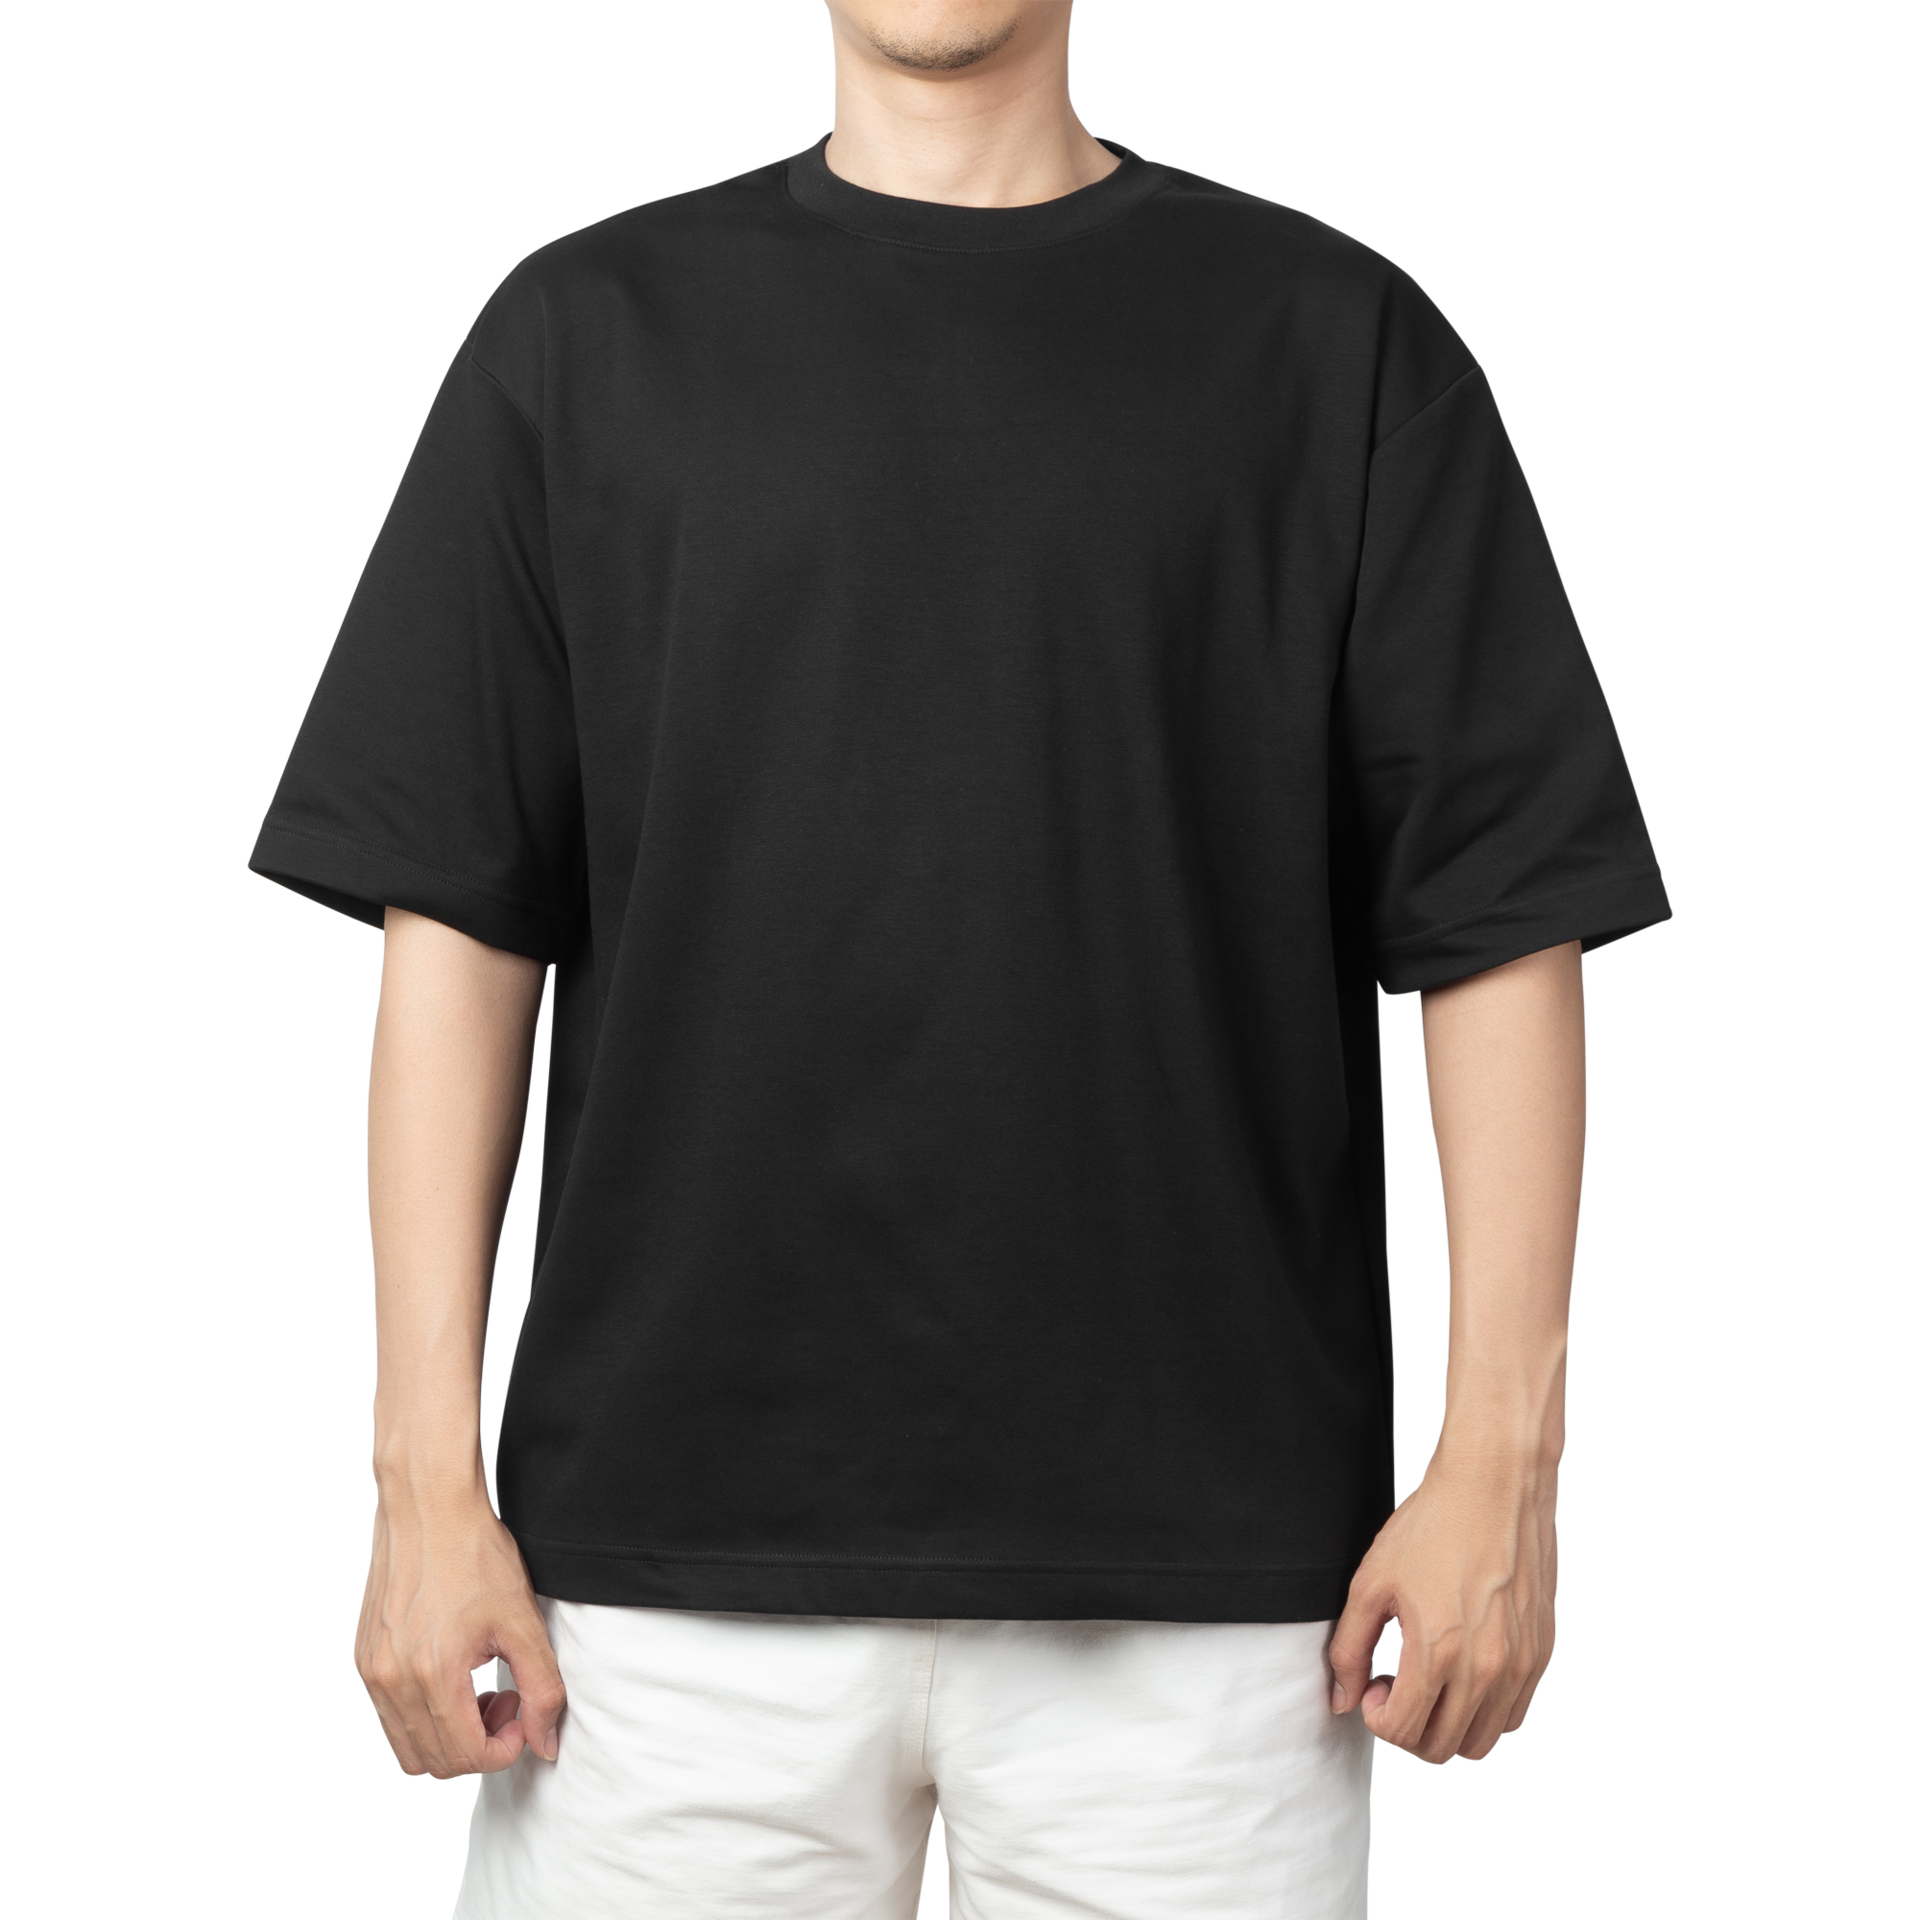 man-in-black-oversize-t-shirt-mockup-design-template-8520221-png